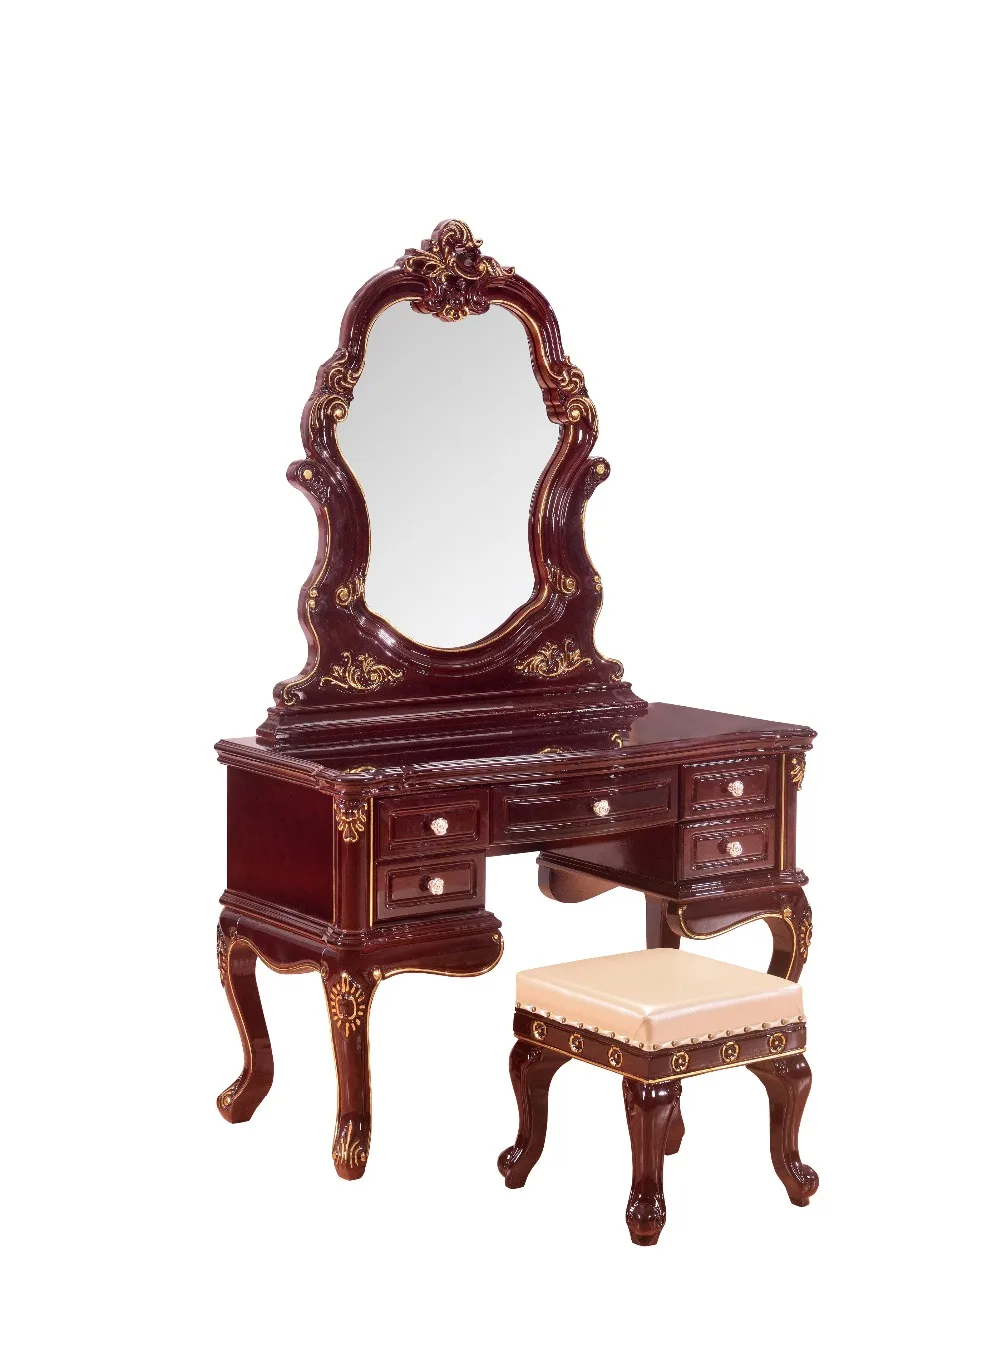 Спальня домашняя мебель туалетный столик стол с 2 ящики с зеркалом и табурет неоклассический стиль KD упакованные деревянные резные материалы